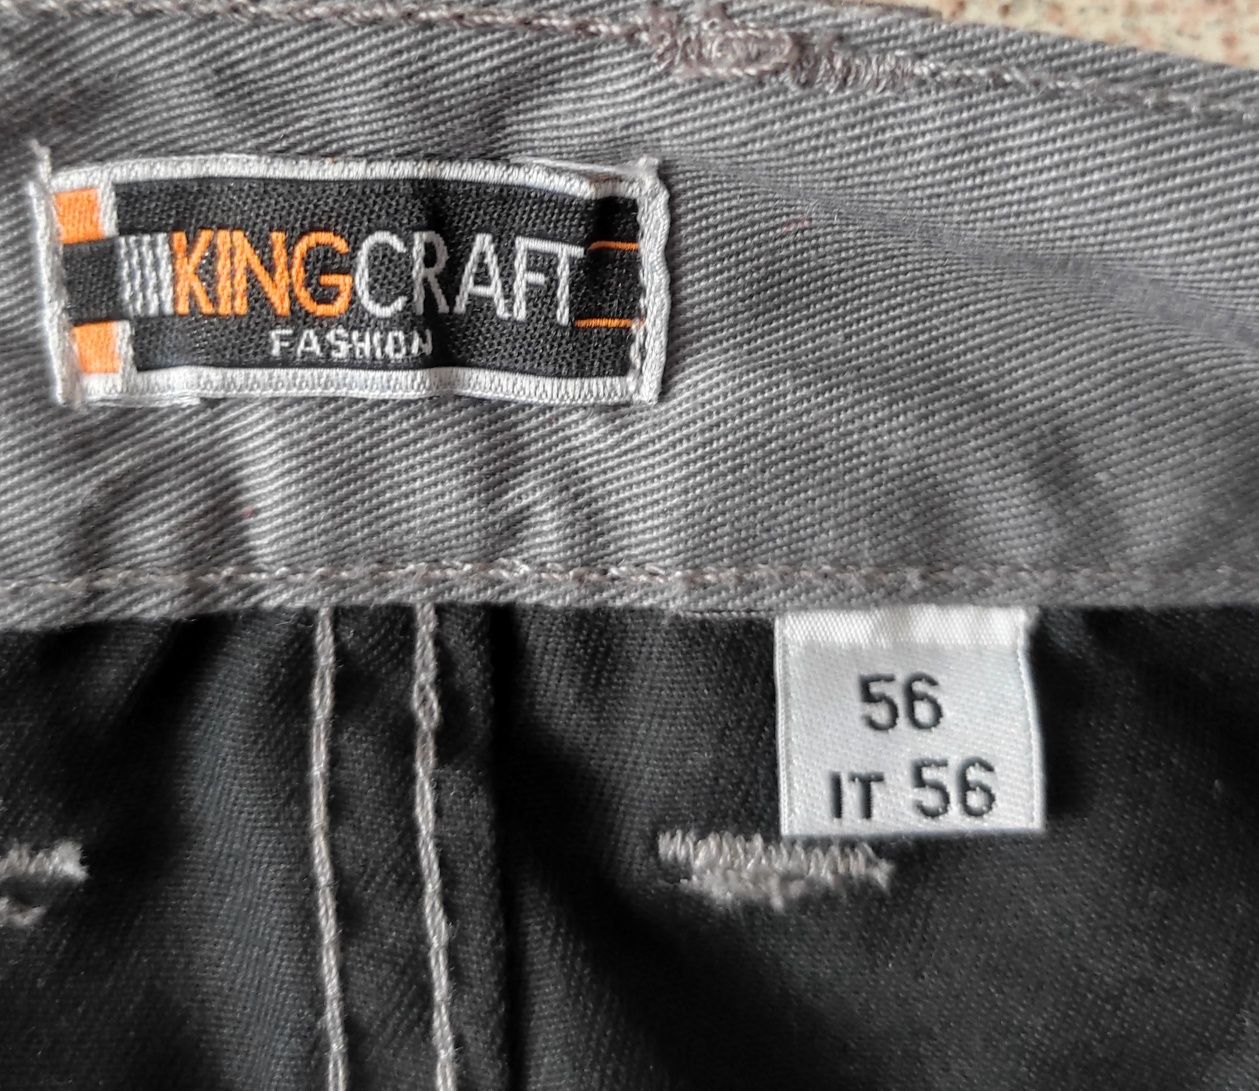 Робочі шорти, рабочие шорты Kingcraft. 56 розмір